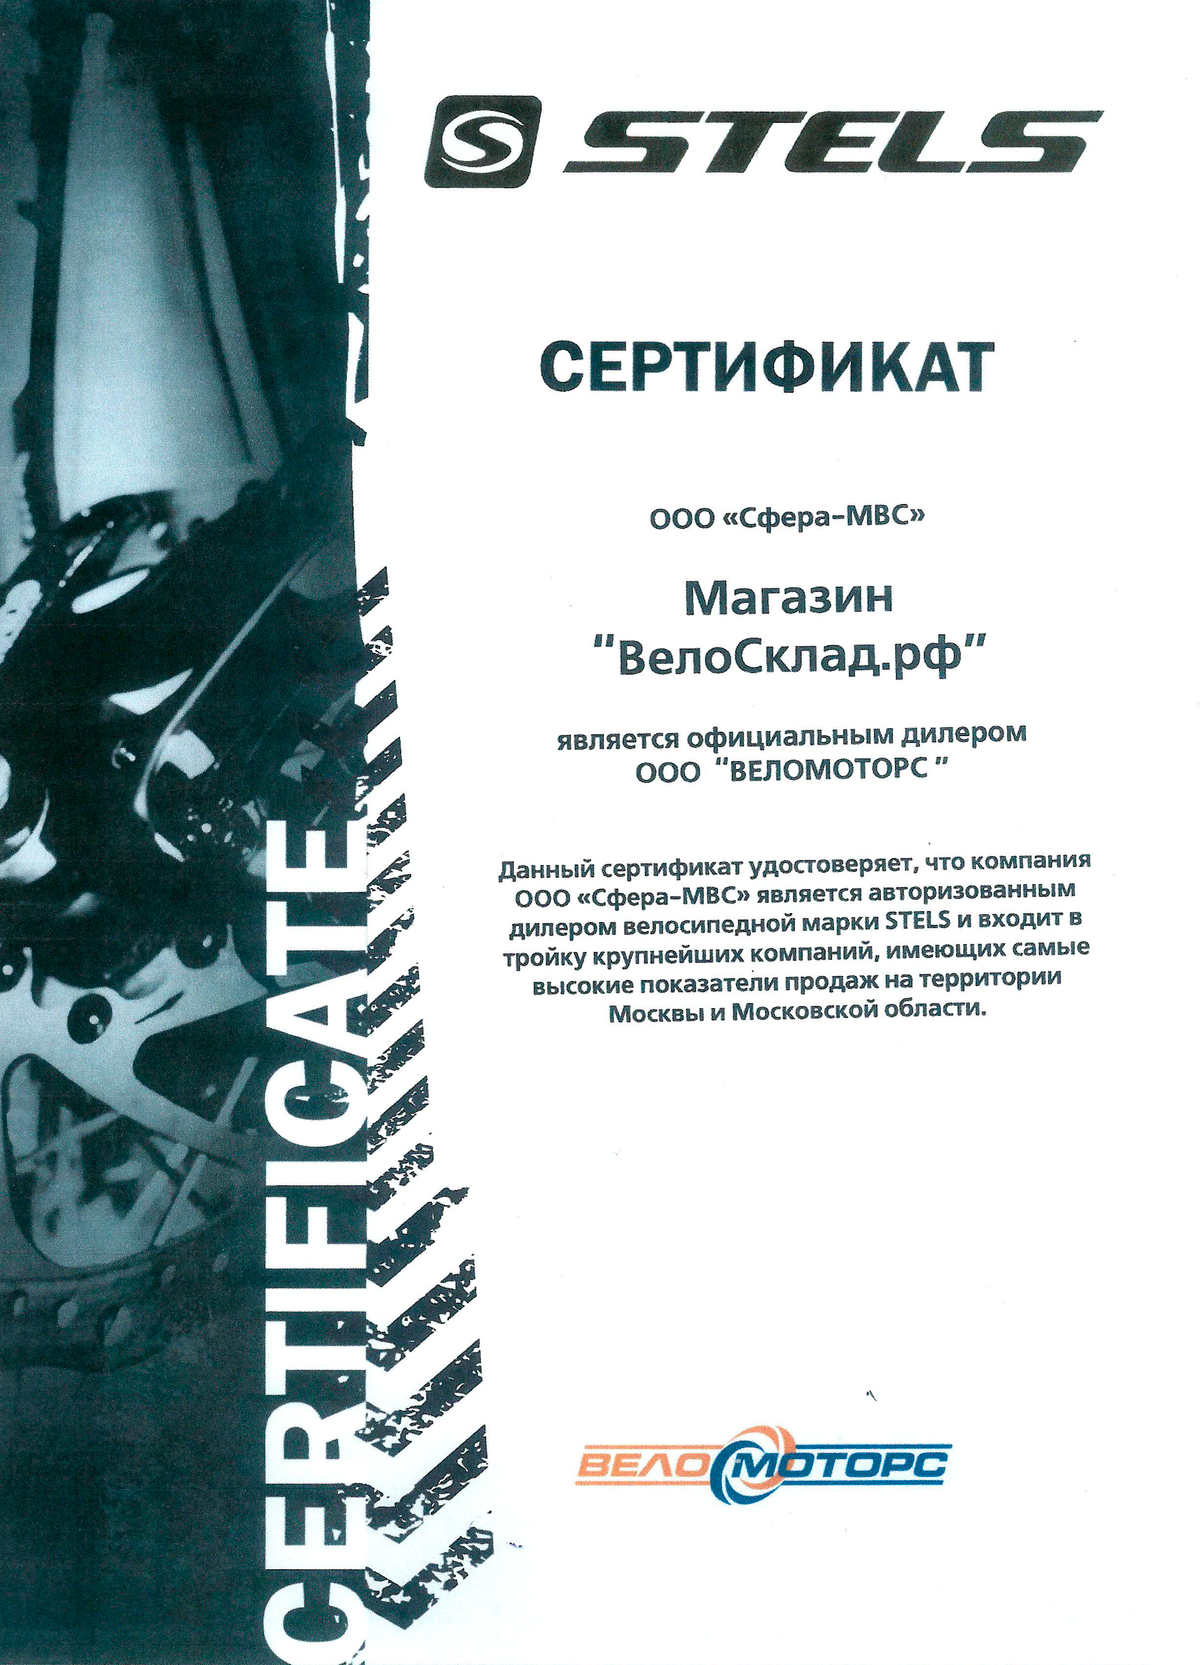 Так выглядит сертификат продавца: он подтверждает, что магазин «Велосклад» — официальный дилер бренда Stels. Источник: velosklad.ru